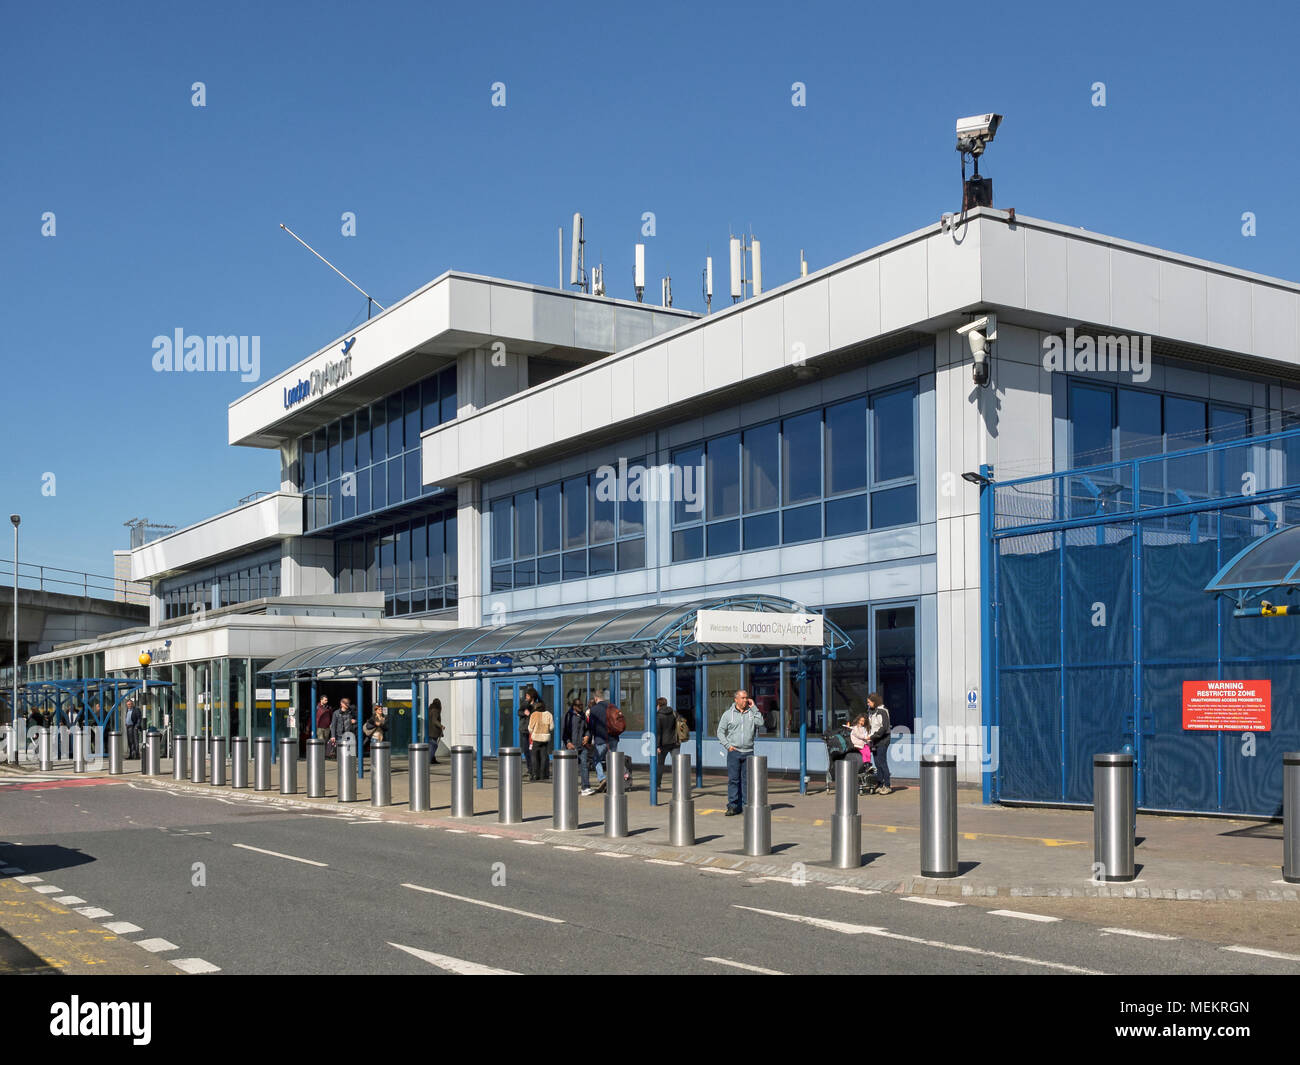 AEROPORTO DI LONDRA: Passeggeri fuori dall'edificio del terminal Foto stock  - Alamy